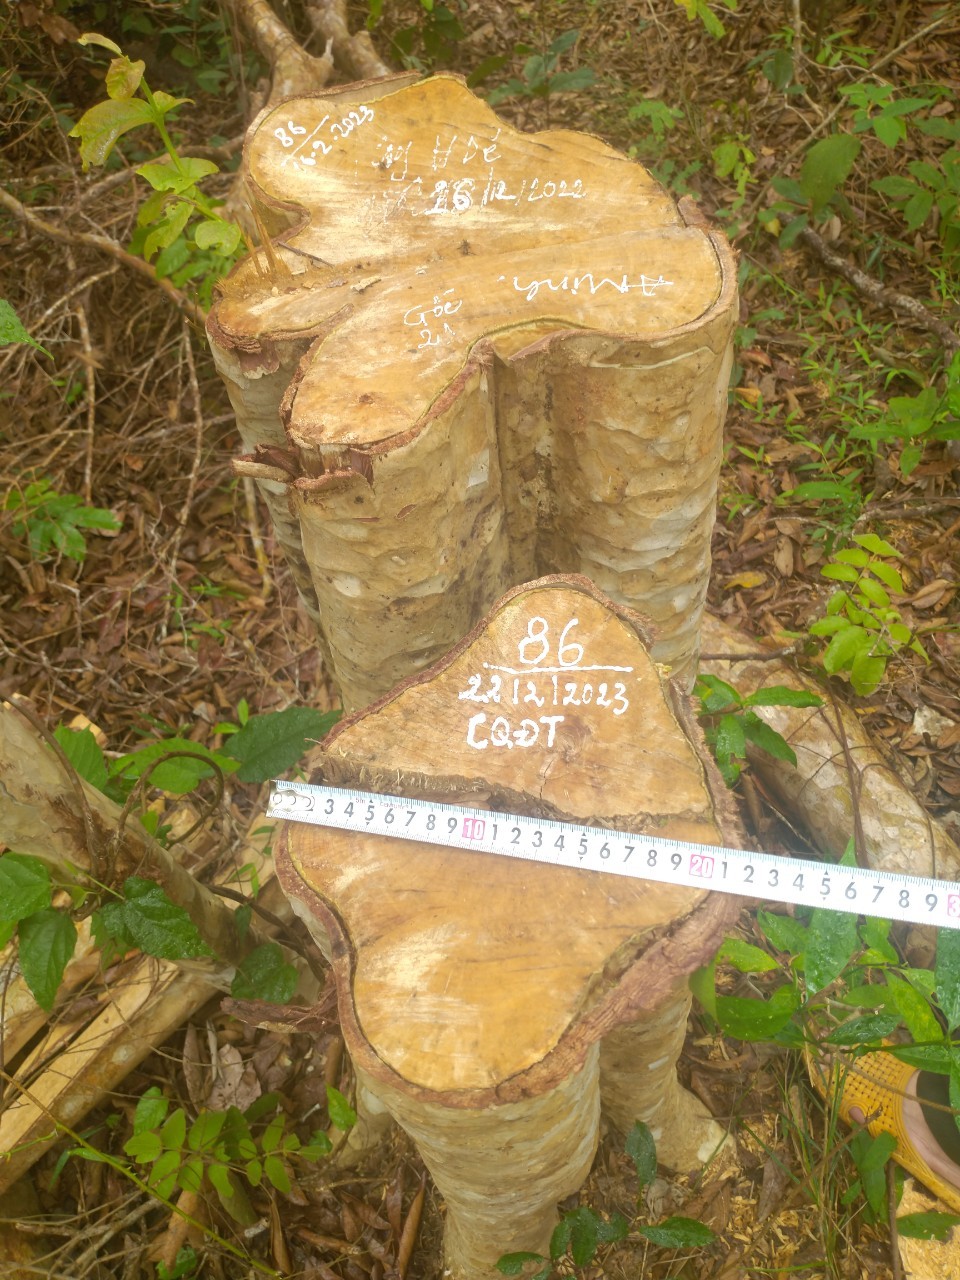 125 cây gỗ tại Gia Lai bị lâm tặc cưa hạ - Ảnh 1.